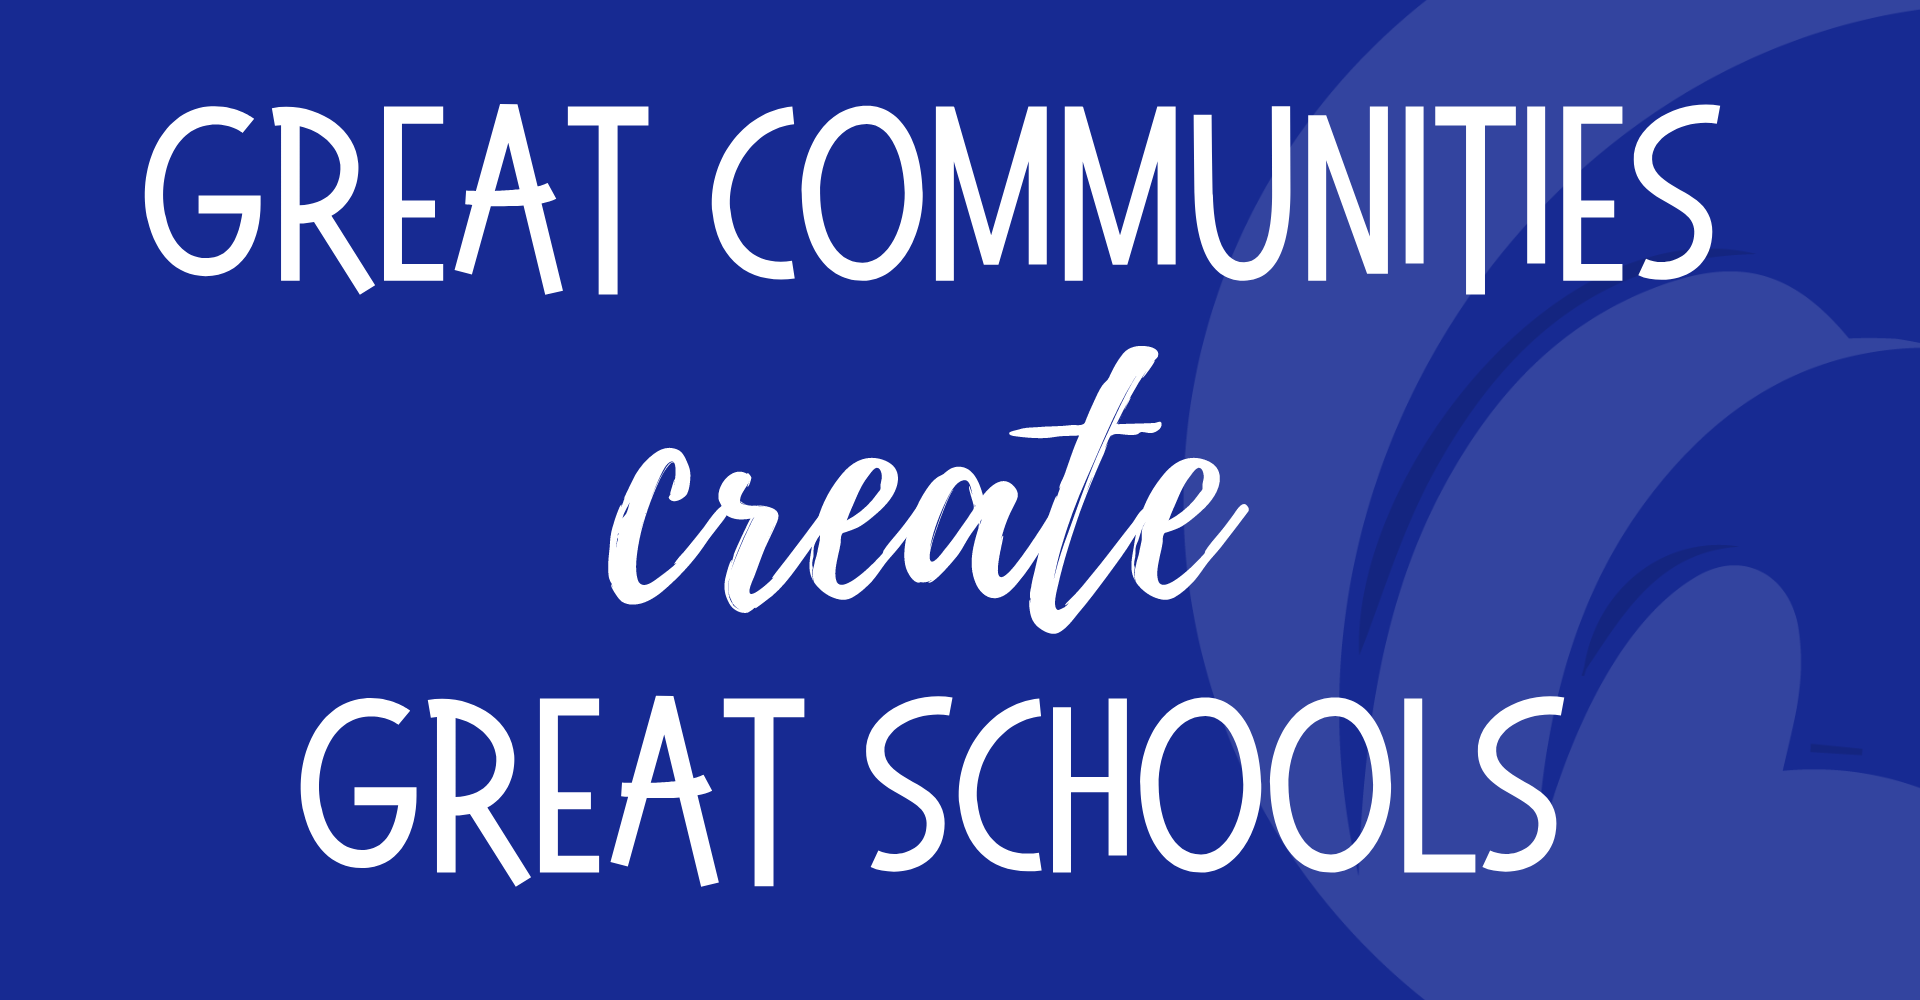 Great Communities Create Great Schools